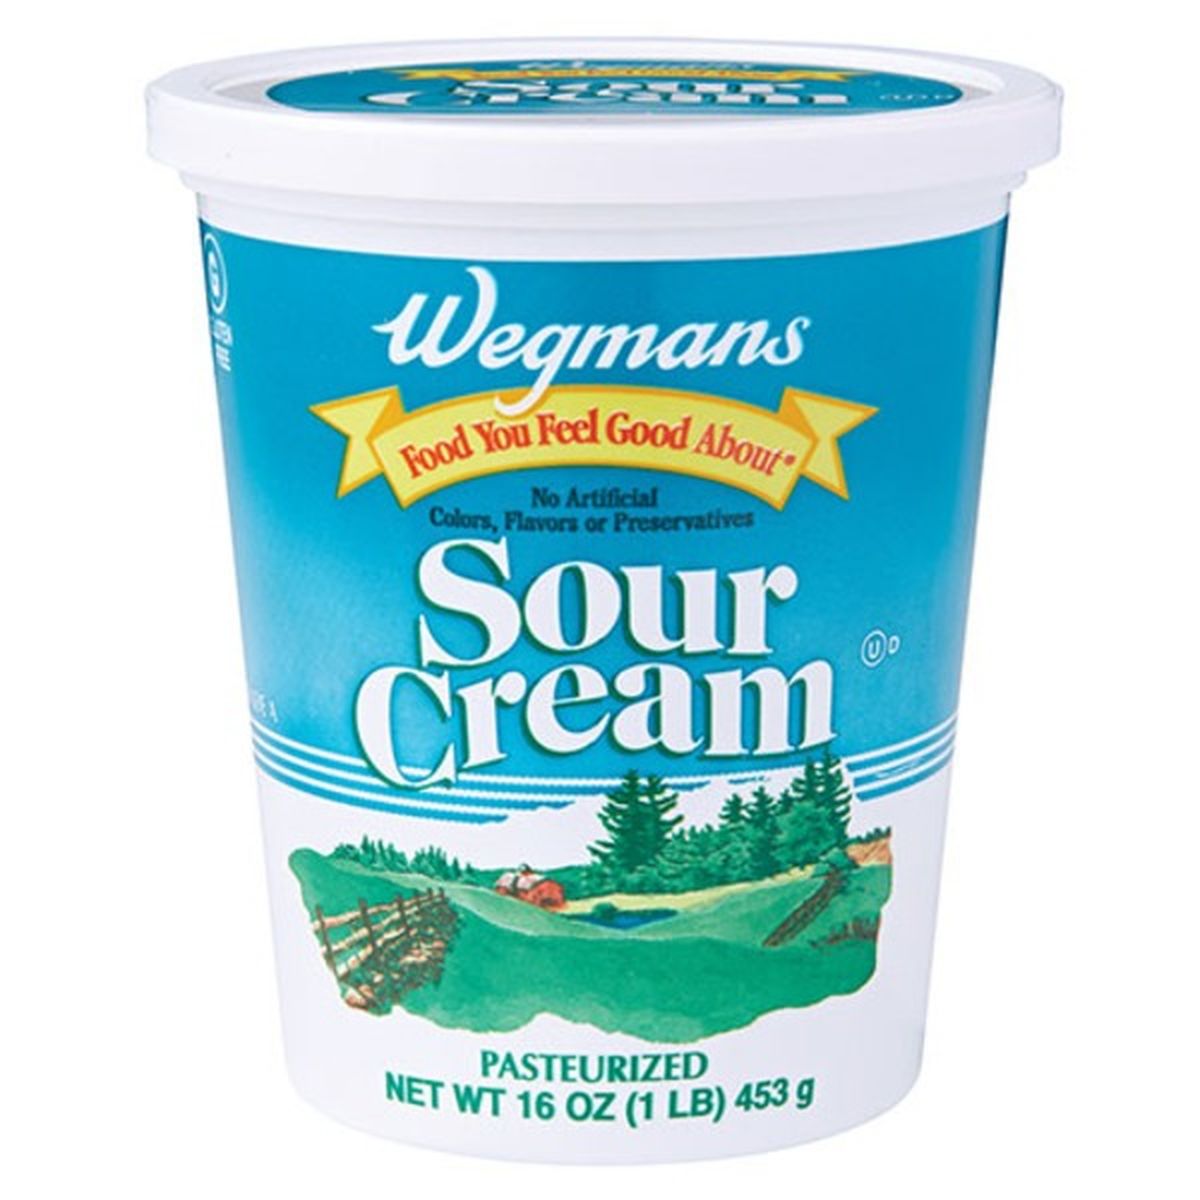 Calories in Wegmans Sour Cream